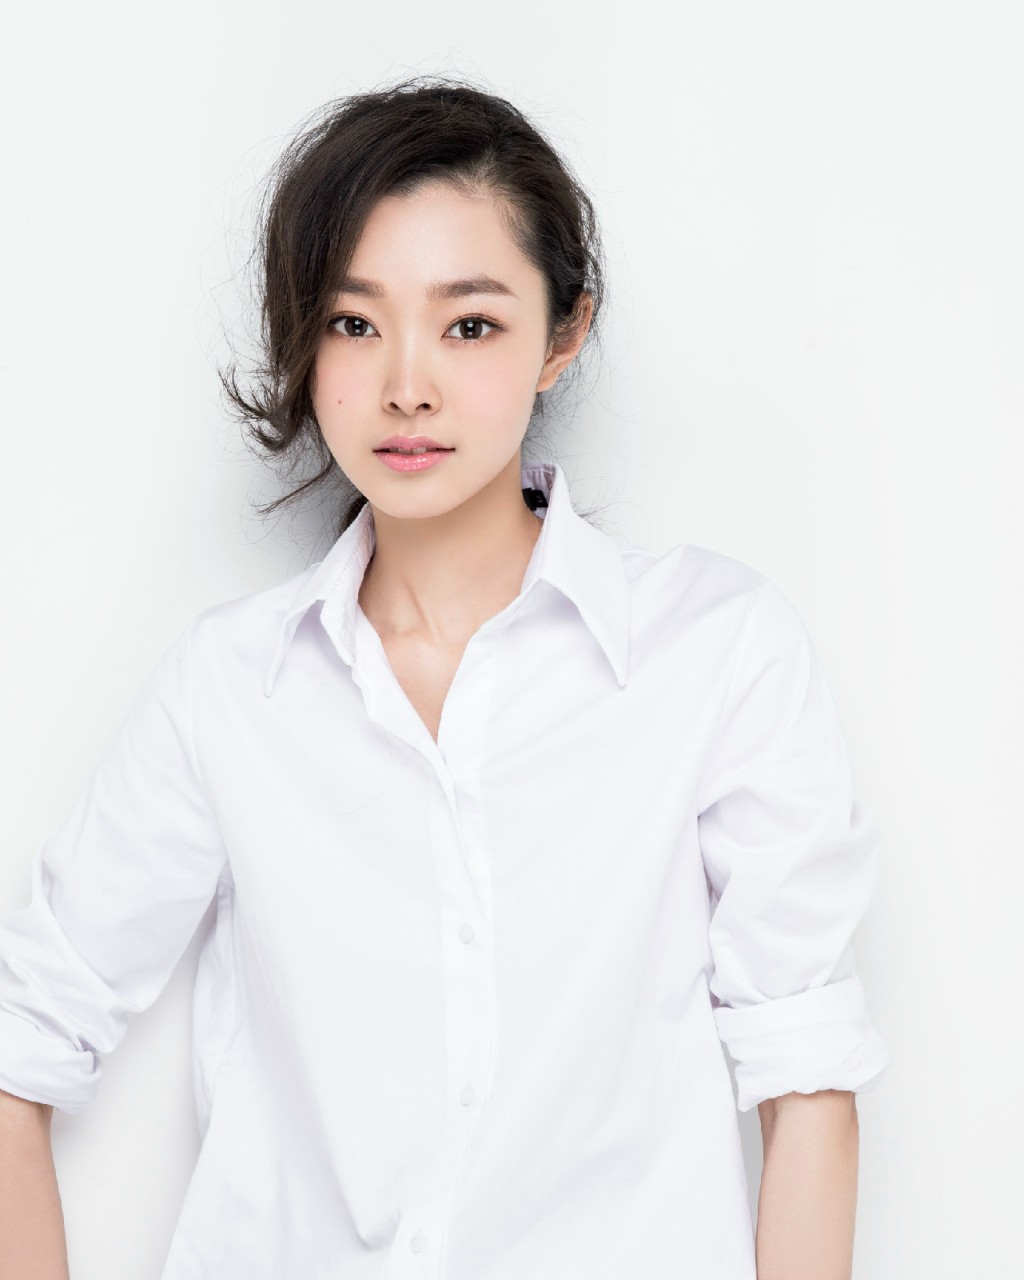 内地33岁女星宋轶最近因主演电视剧《长风渡》人气飙升。